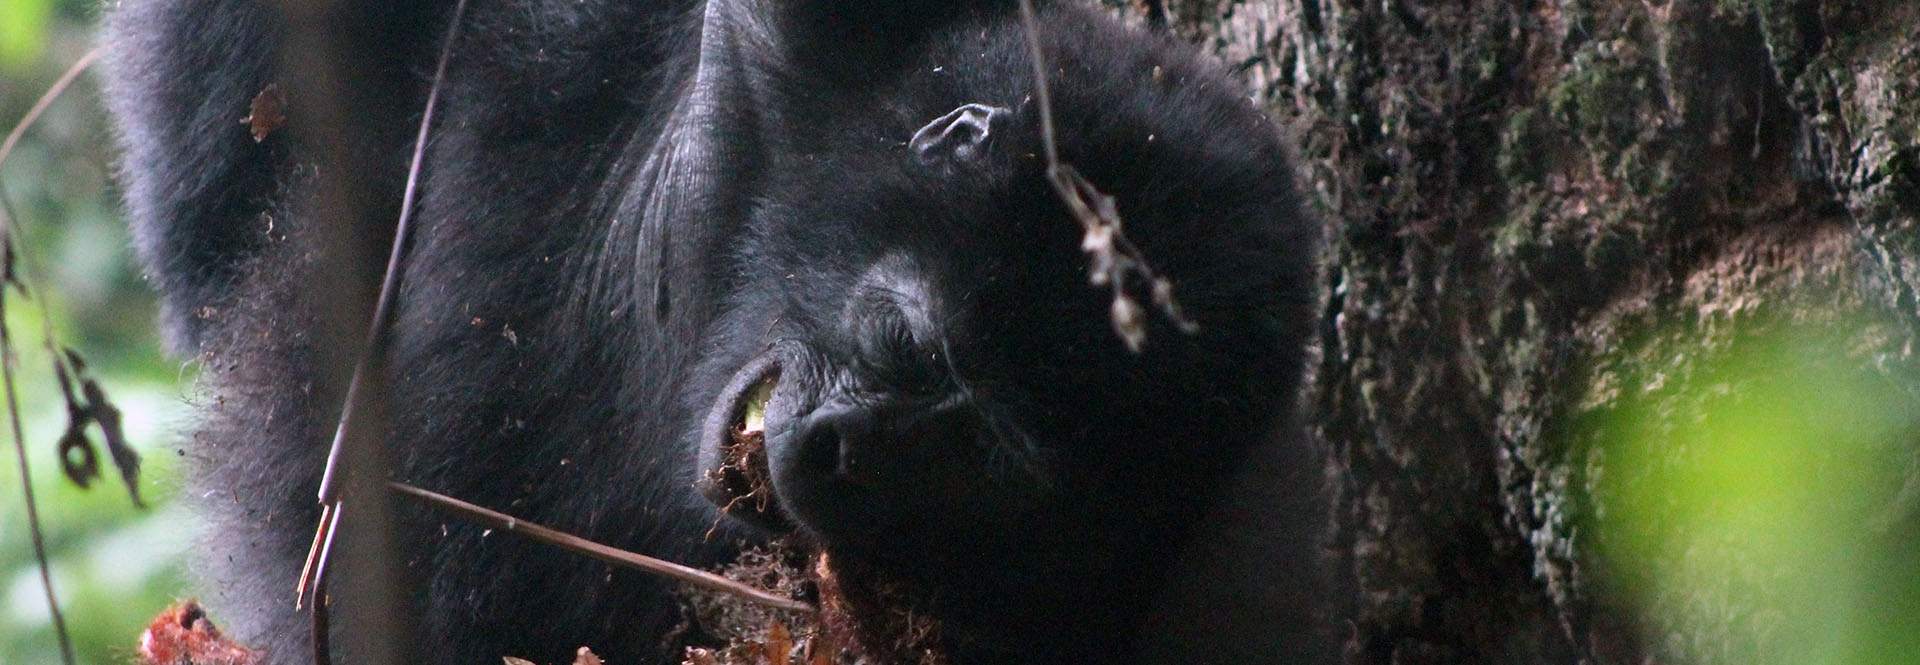 gorilla eating a fern